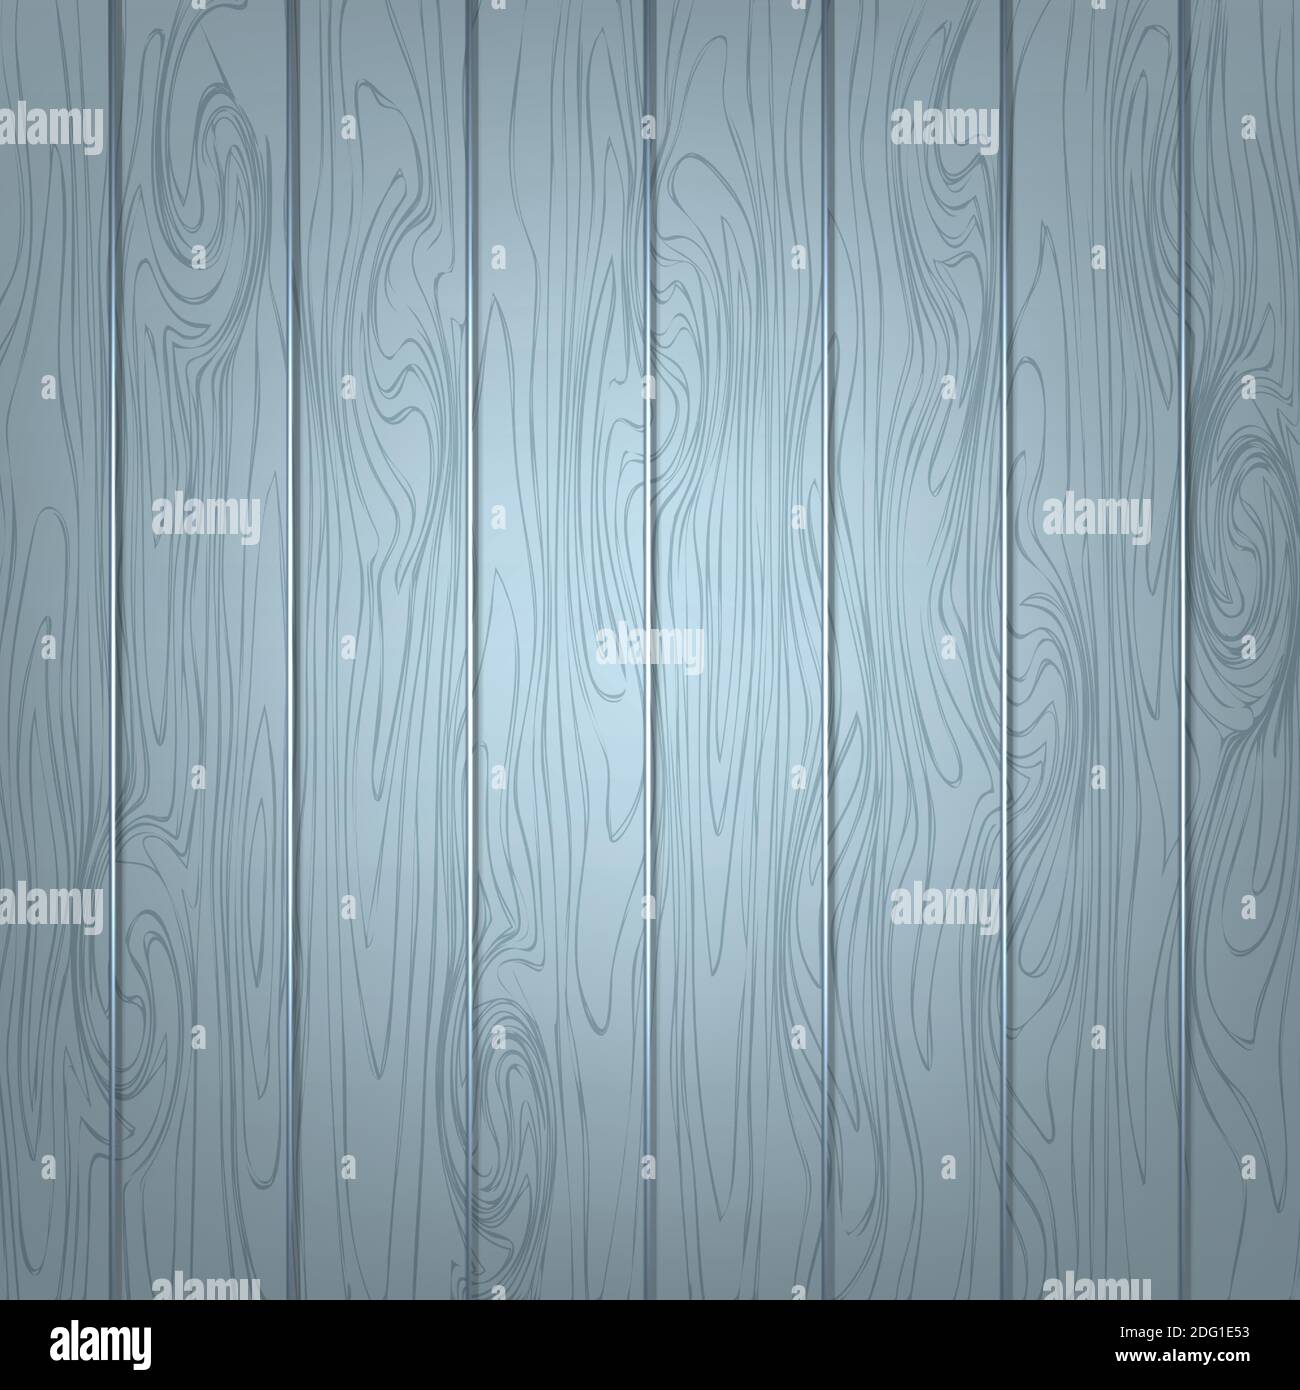 Fondo con textura de parquet de madera de color gris, azul. Ilustración realista. Vector. Ilustración del Vector